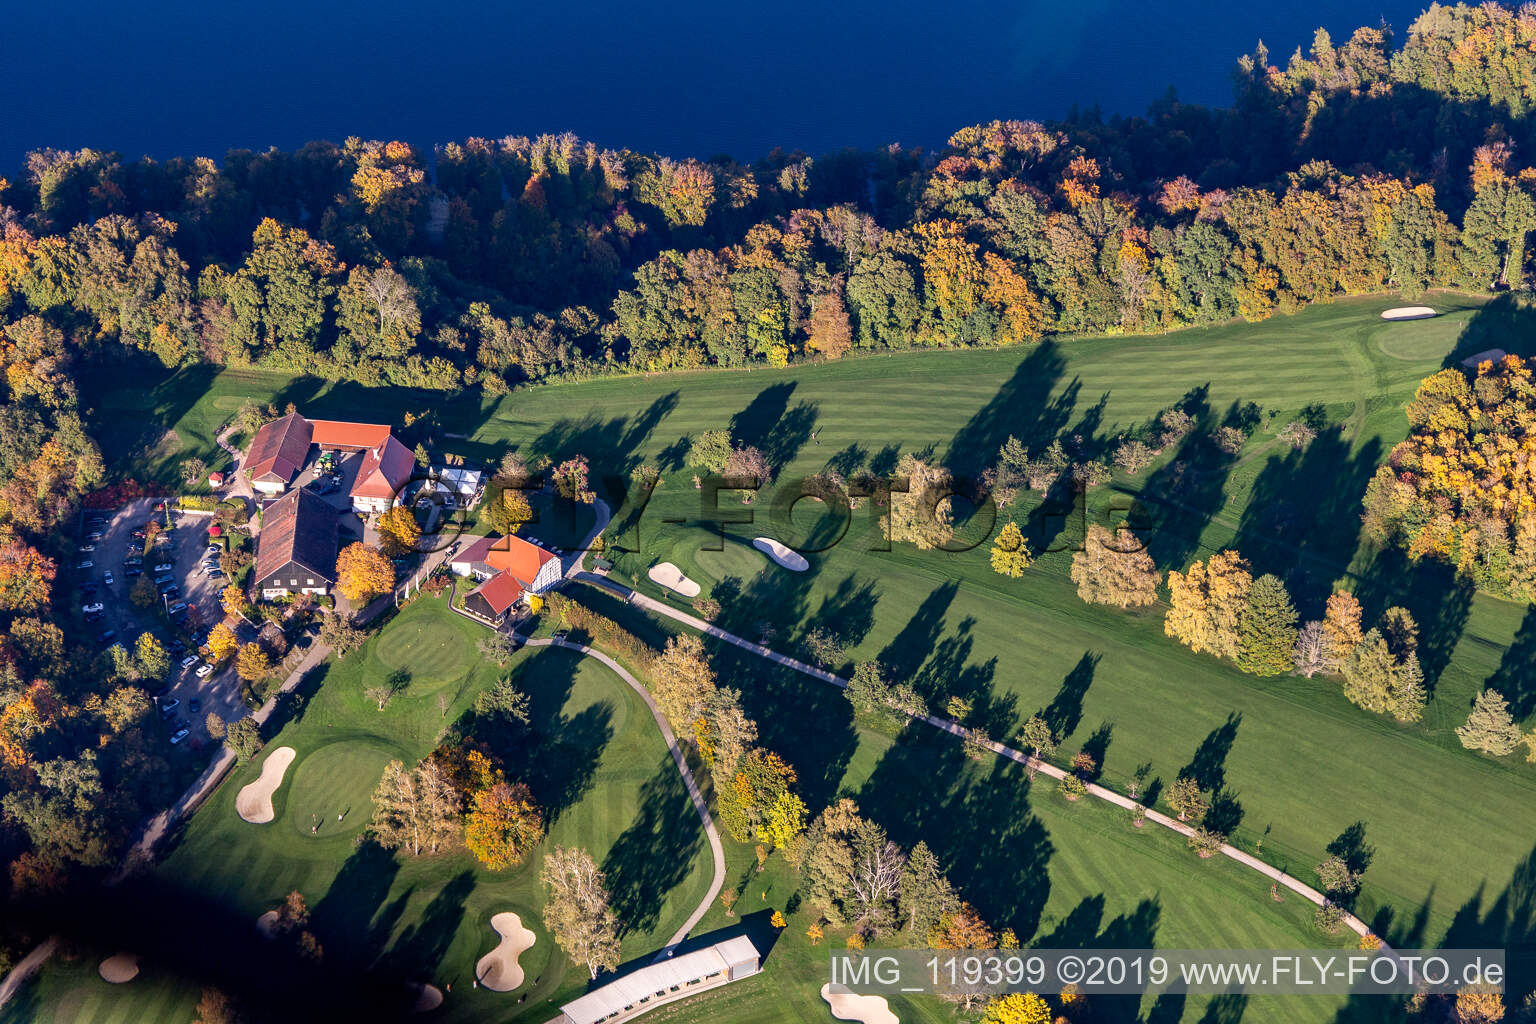 Vue aérienne de Club de golf de Constance dans le quartier de Langenrain à Allensbach dans le département Bade-Wurtemberg, Allemagne